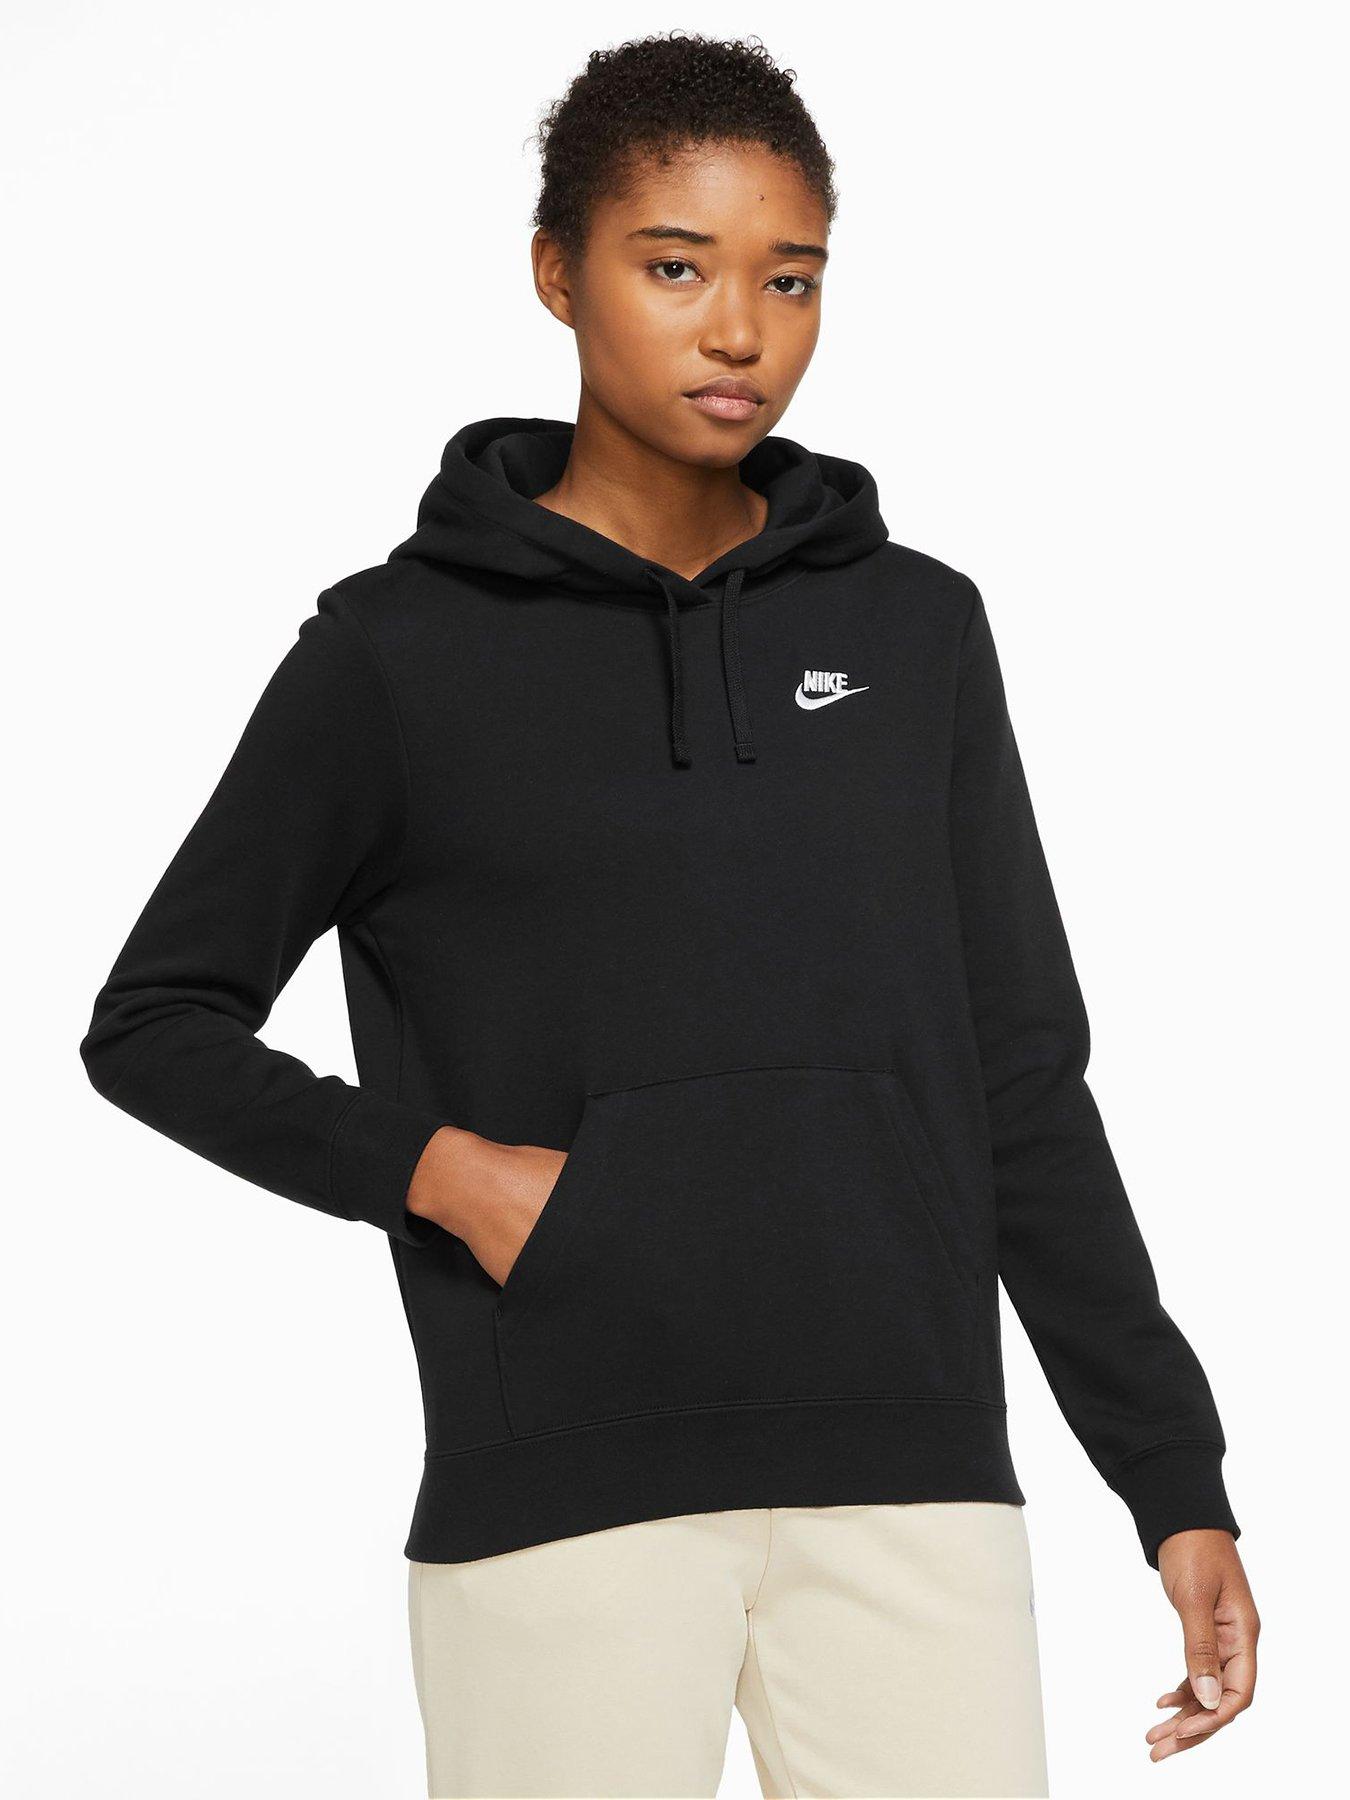 Nike Hoodie Womens Small Purple Black Swoosh Hooded Sweater Sweatshirt  Ladies